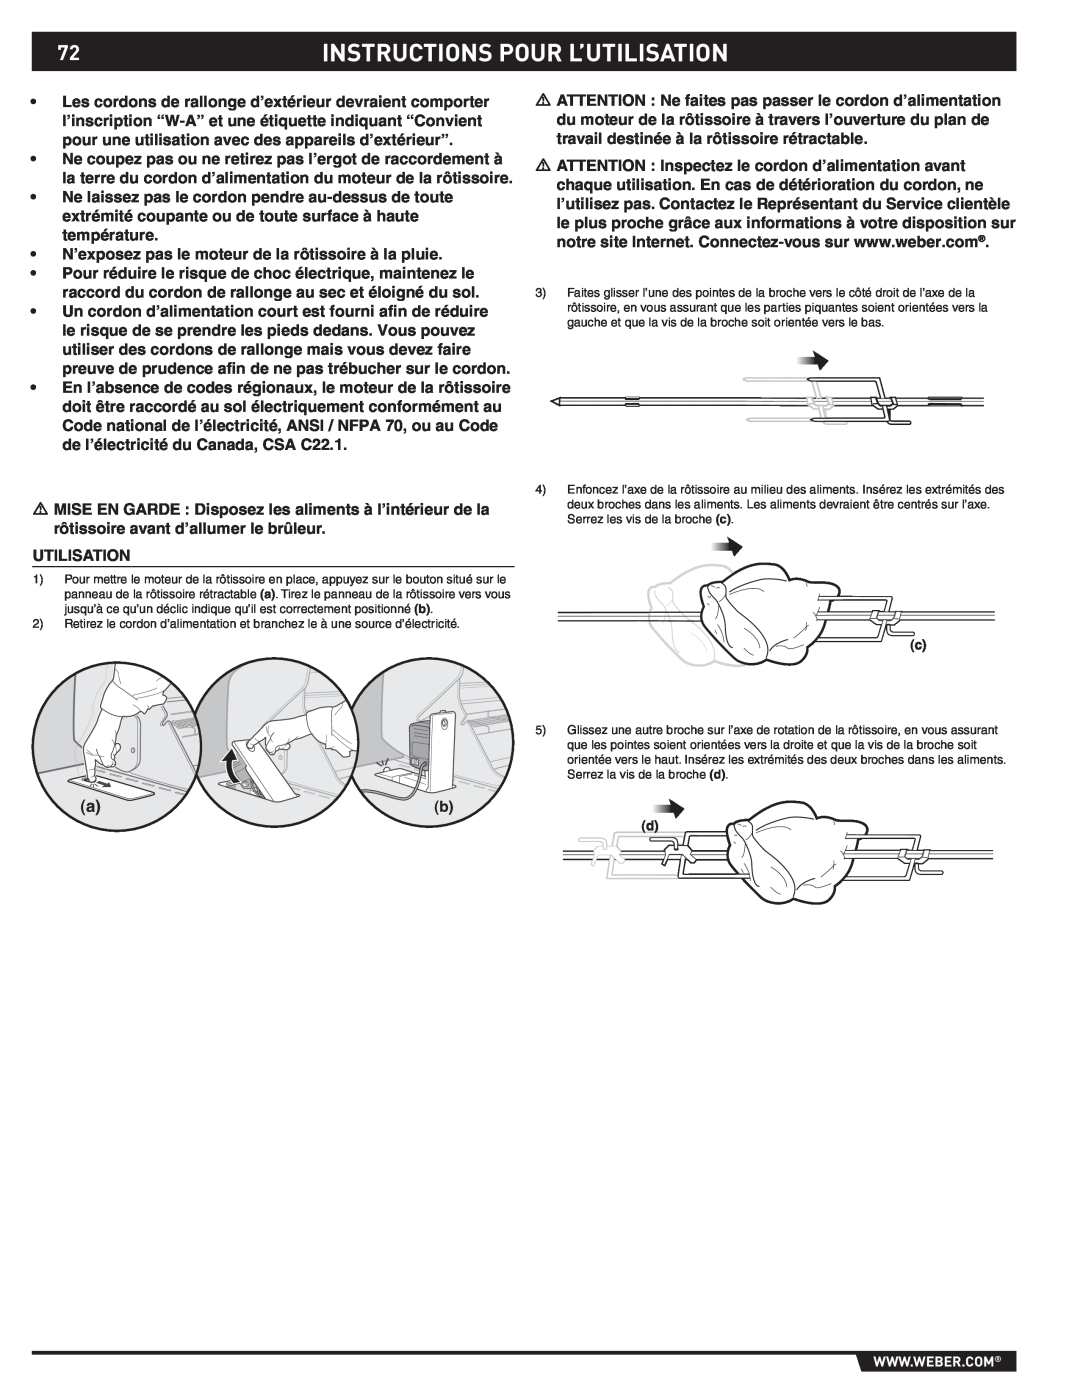 Weber S-470TM manual Instructions Pour L’Utilisation 